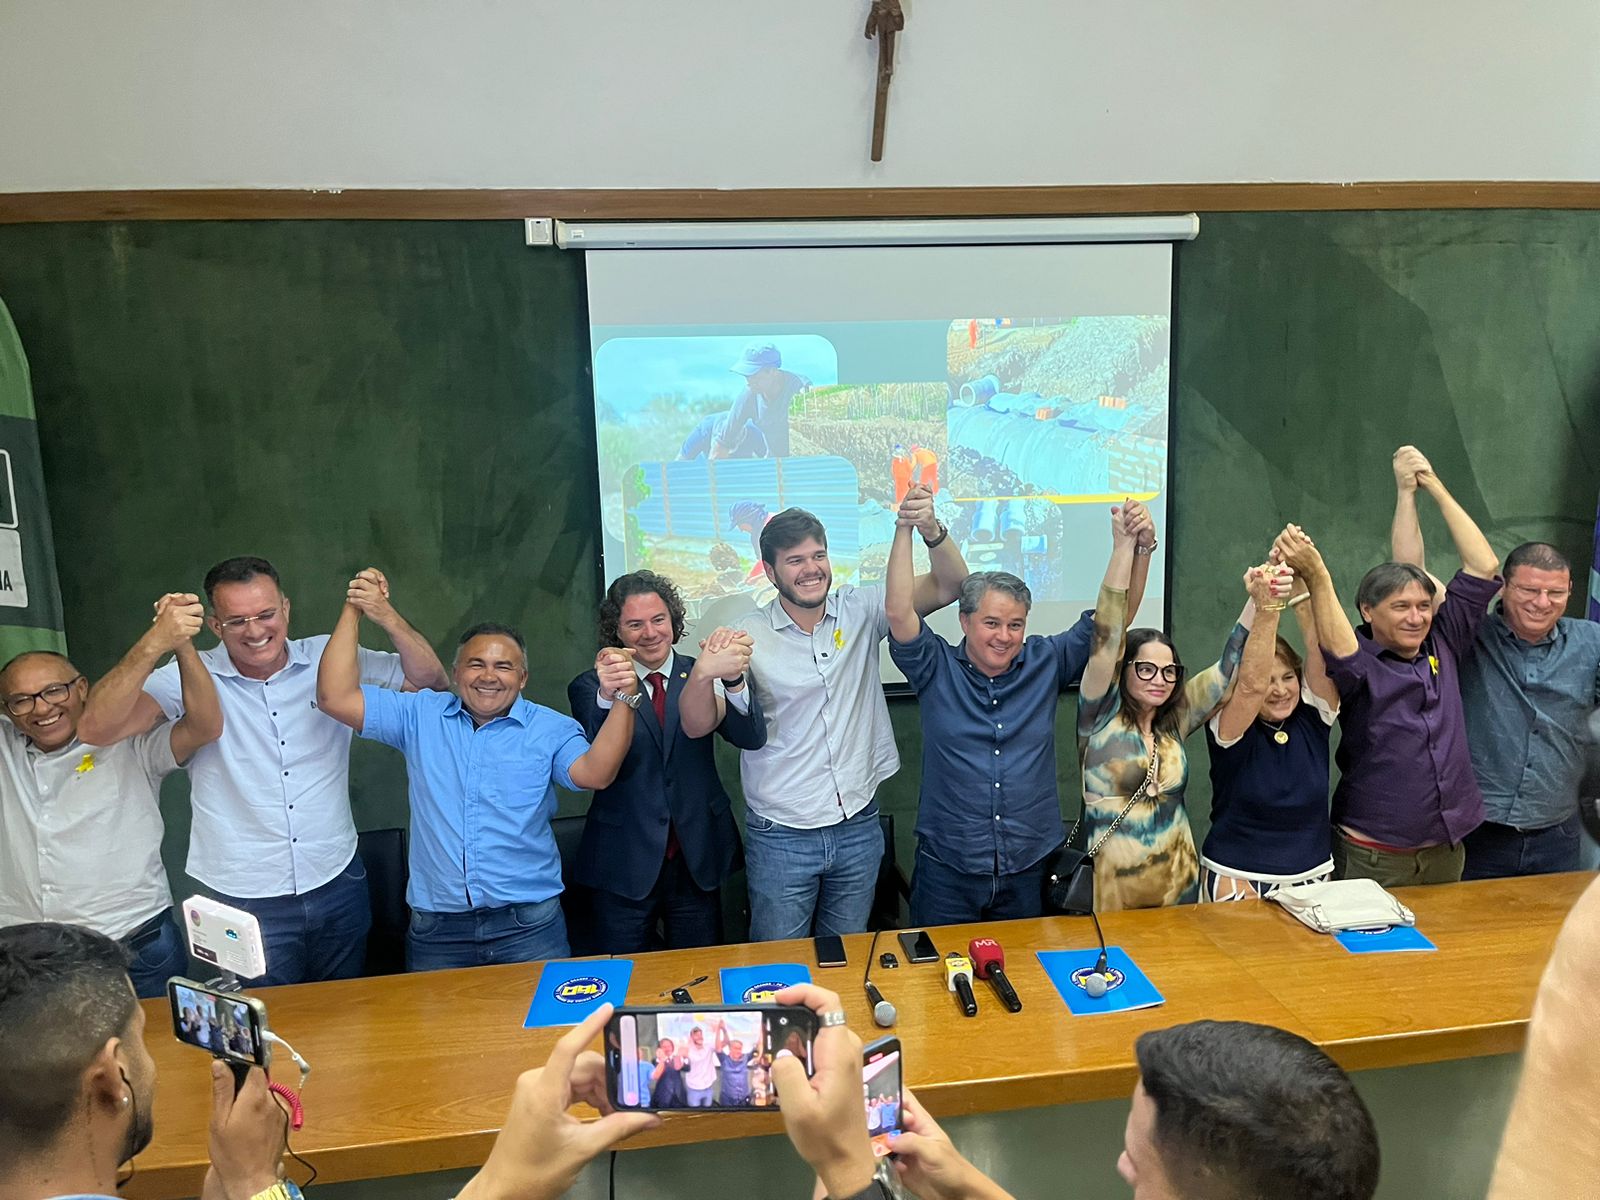 Veneziano participa, com Efraim e Bruno, de coletiva sobre conquista do financiamento de US$ 52 milhões para Campina Grande: “esforço coletivo”